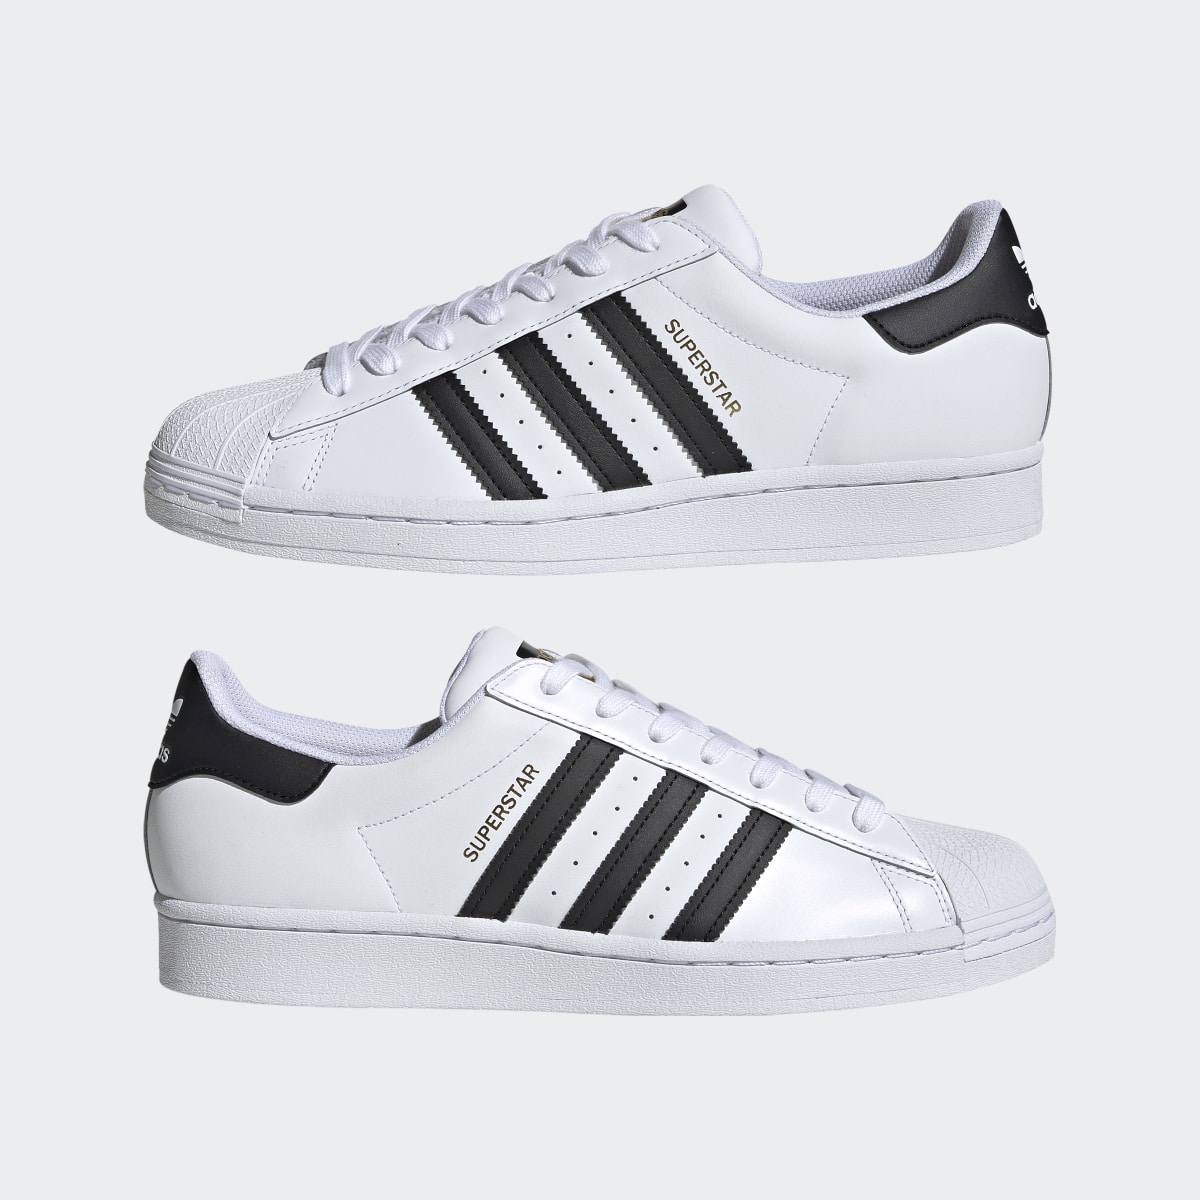 Adidas Superstar Ayakkabı. 15